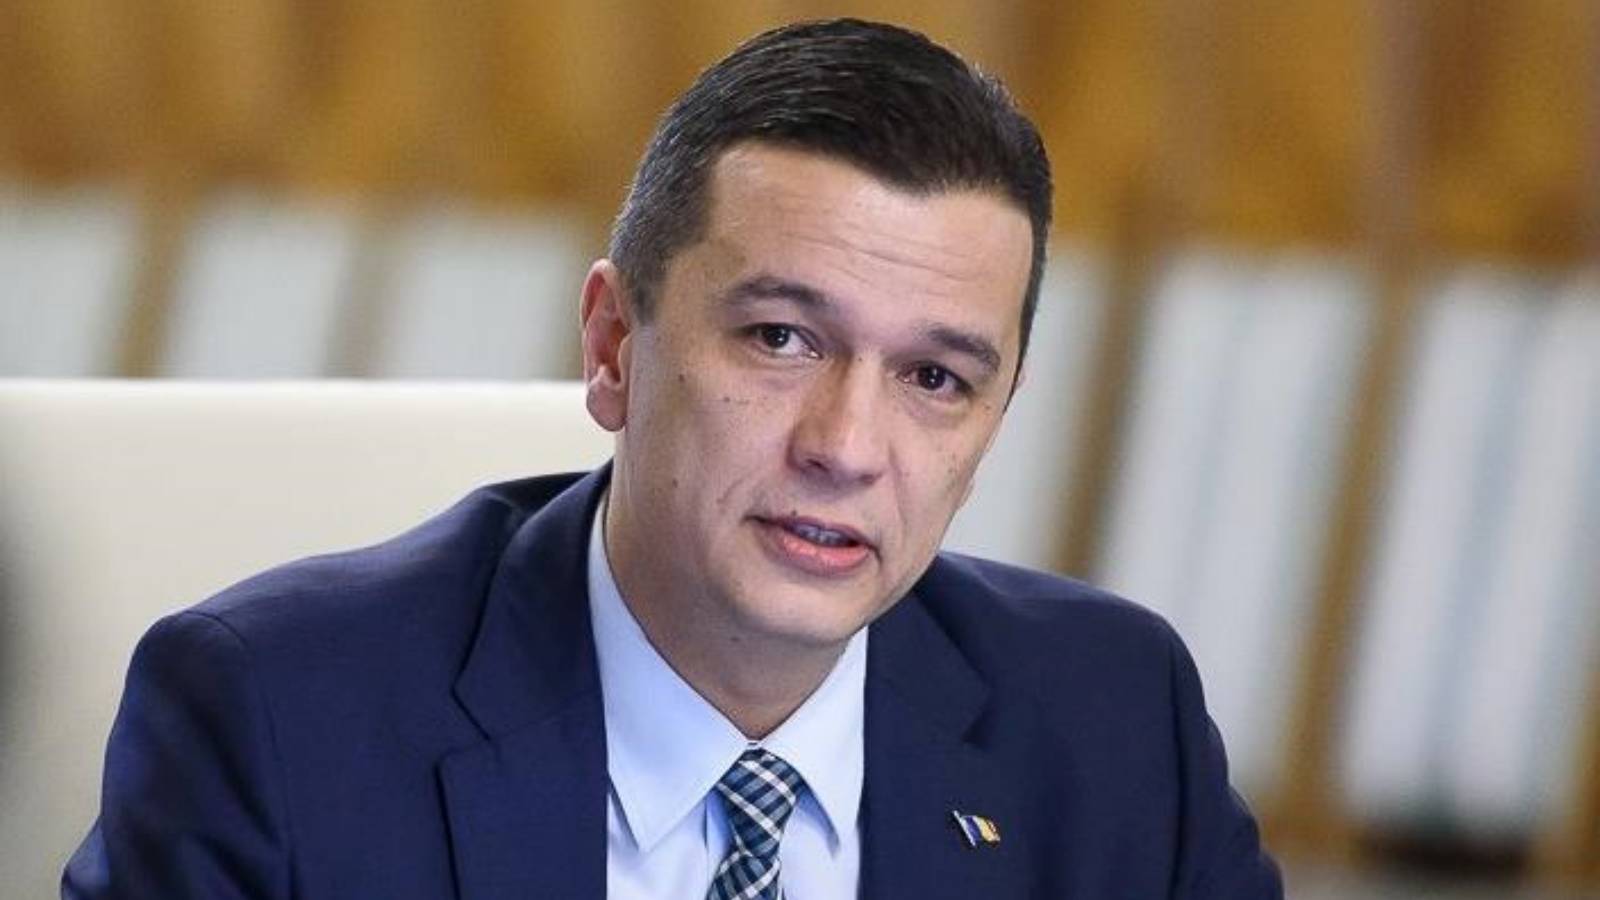 Transportministeren To foranstaltninger i sidste øjeblik officielt bekræftet af rumænere